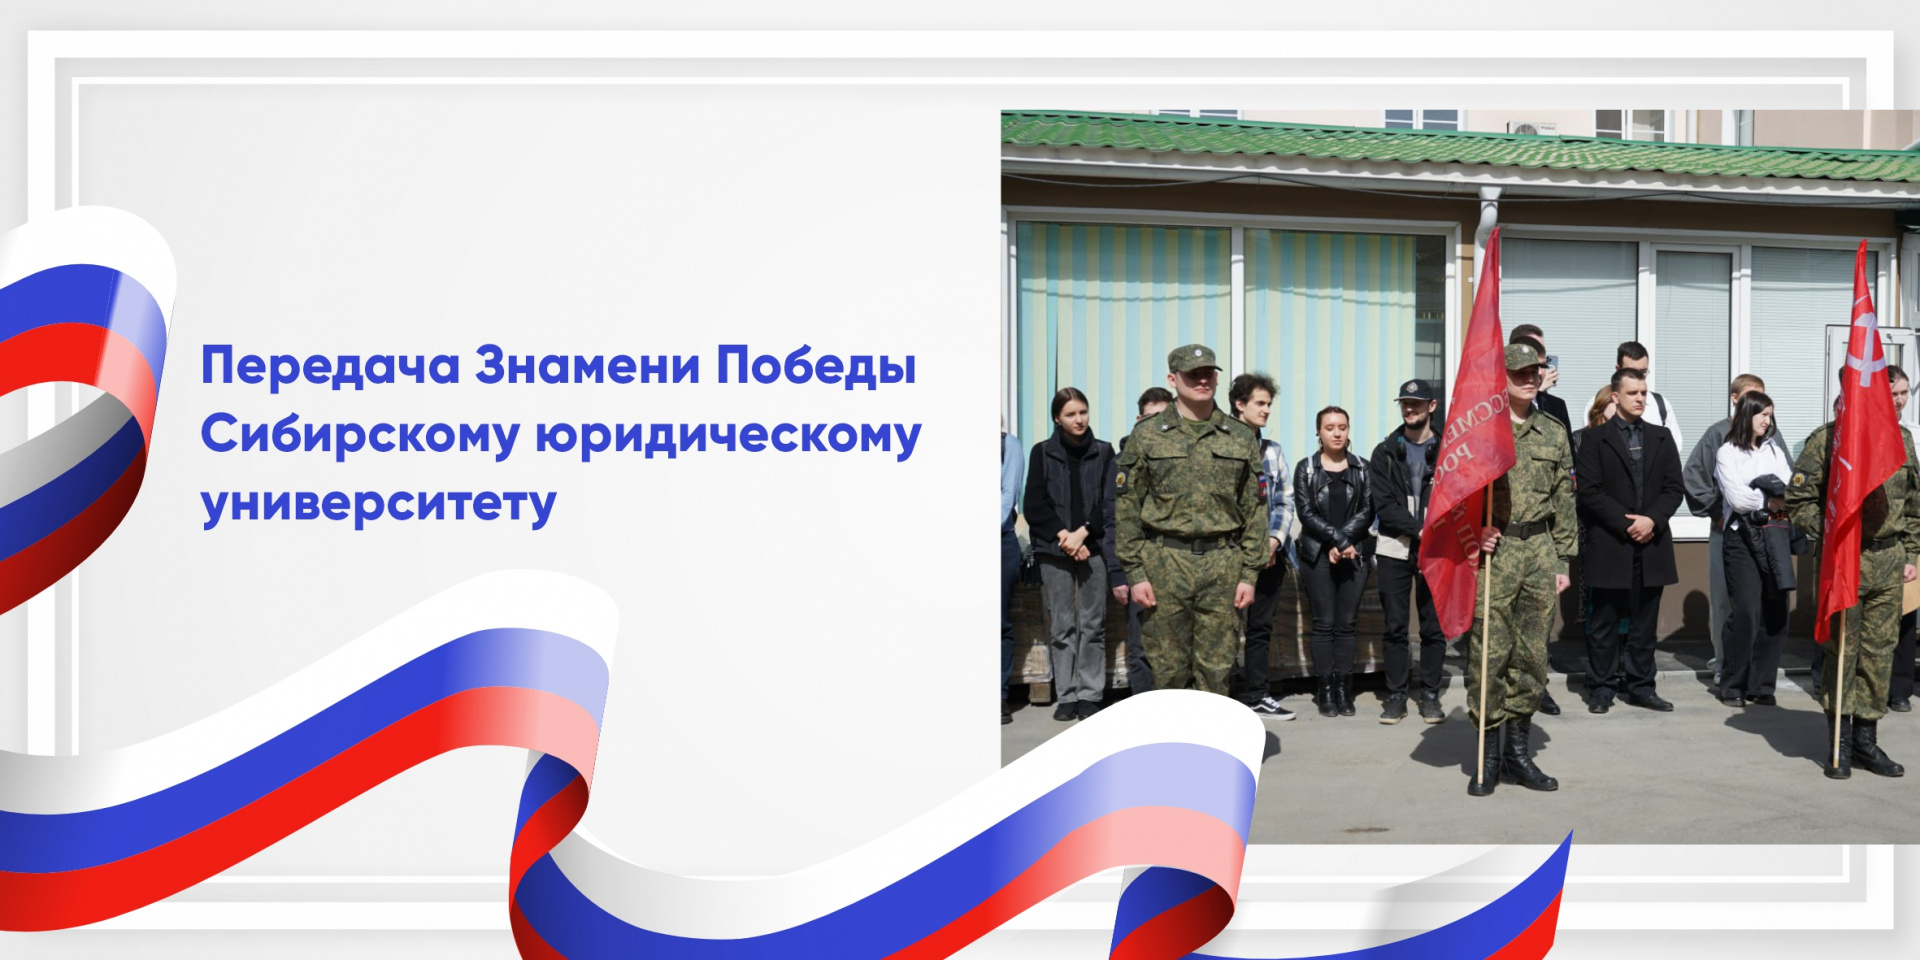 СибАДИ передал Знамя Победы Сибирскому юридическому университету